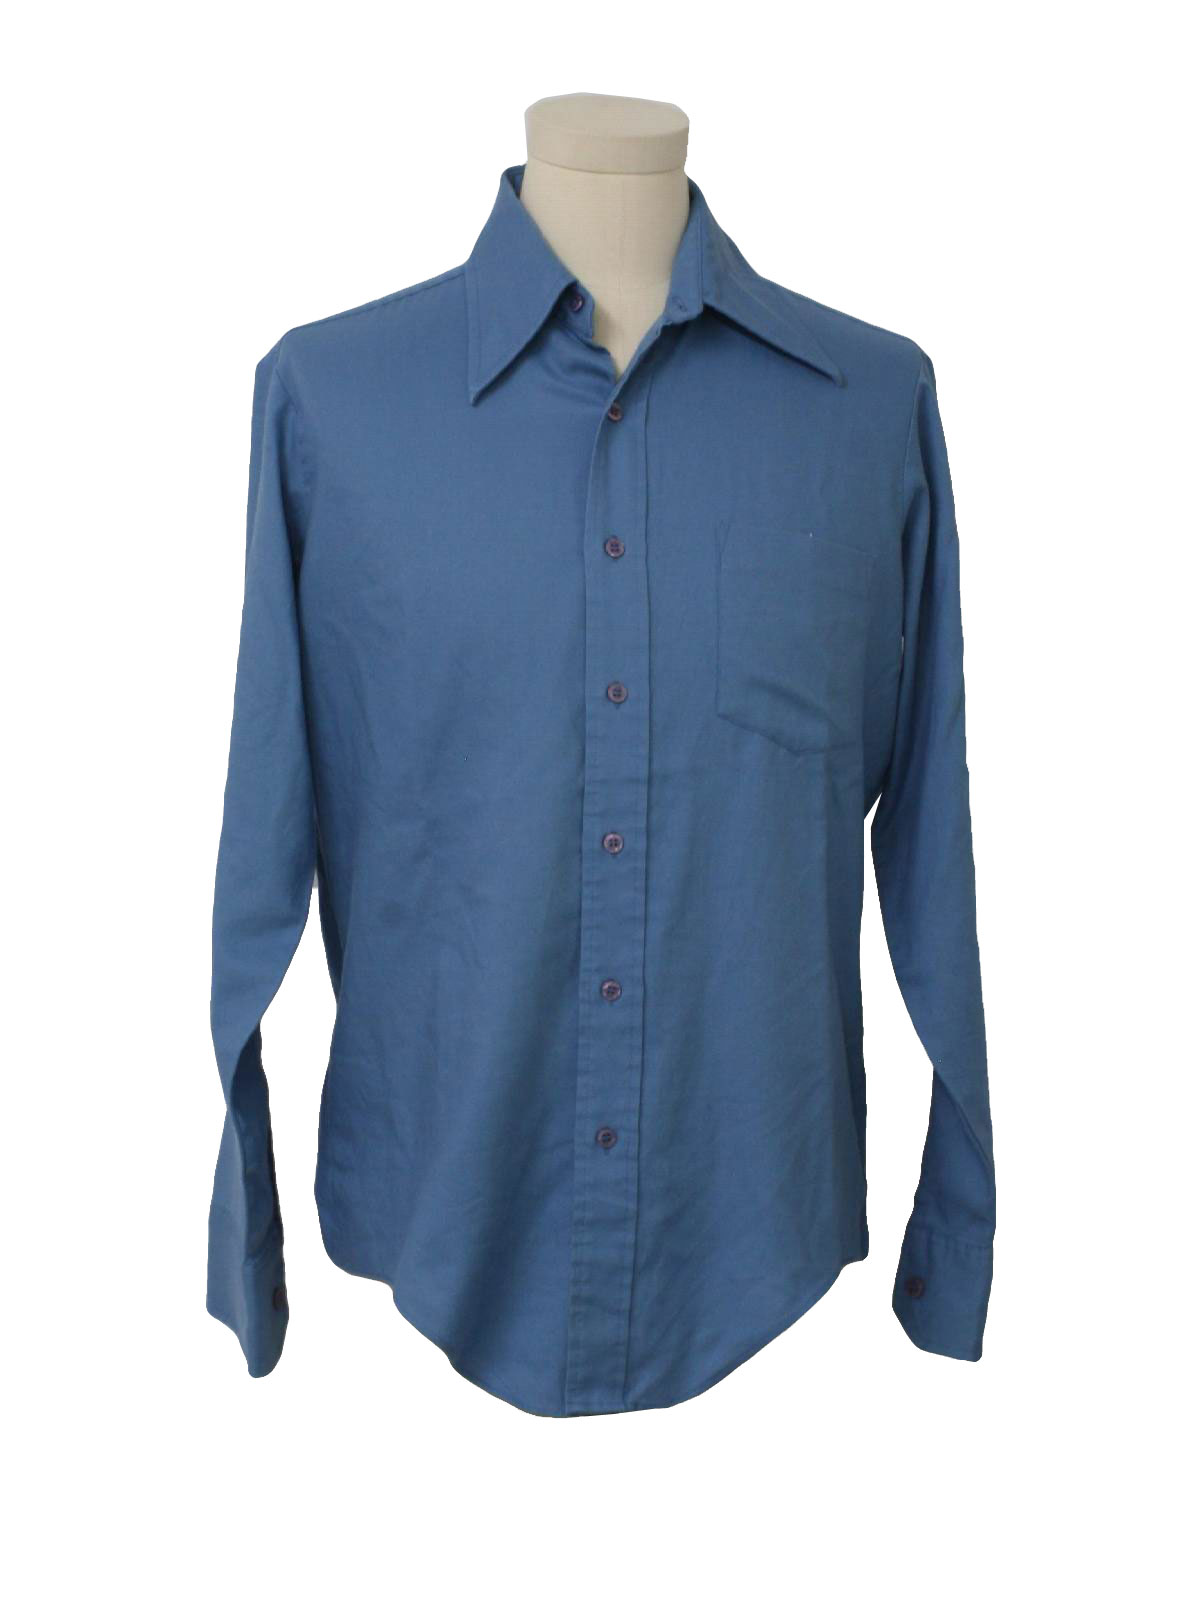 Vintage 1970's Shirt: 70s -Kmart- Mens light blue background polyester ...